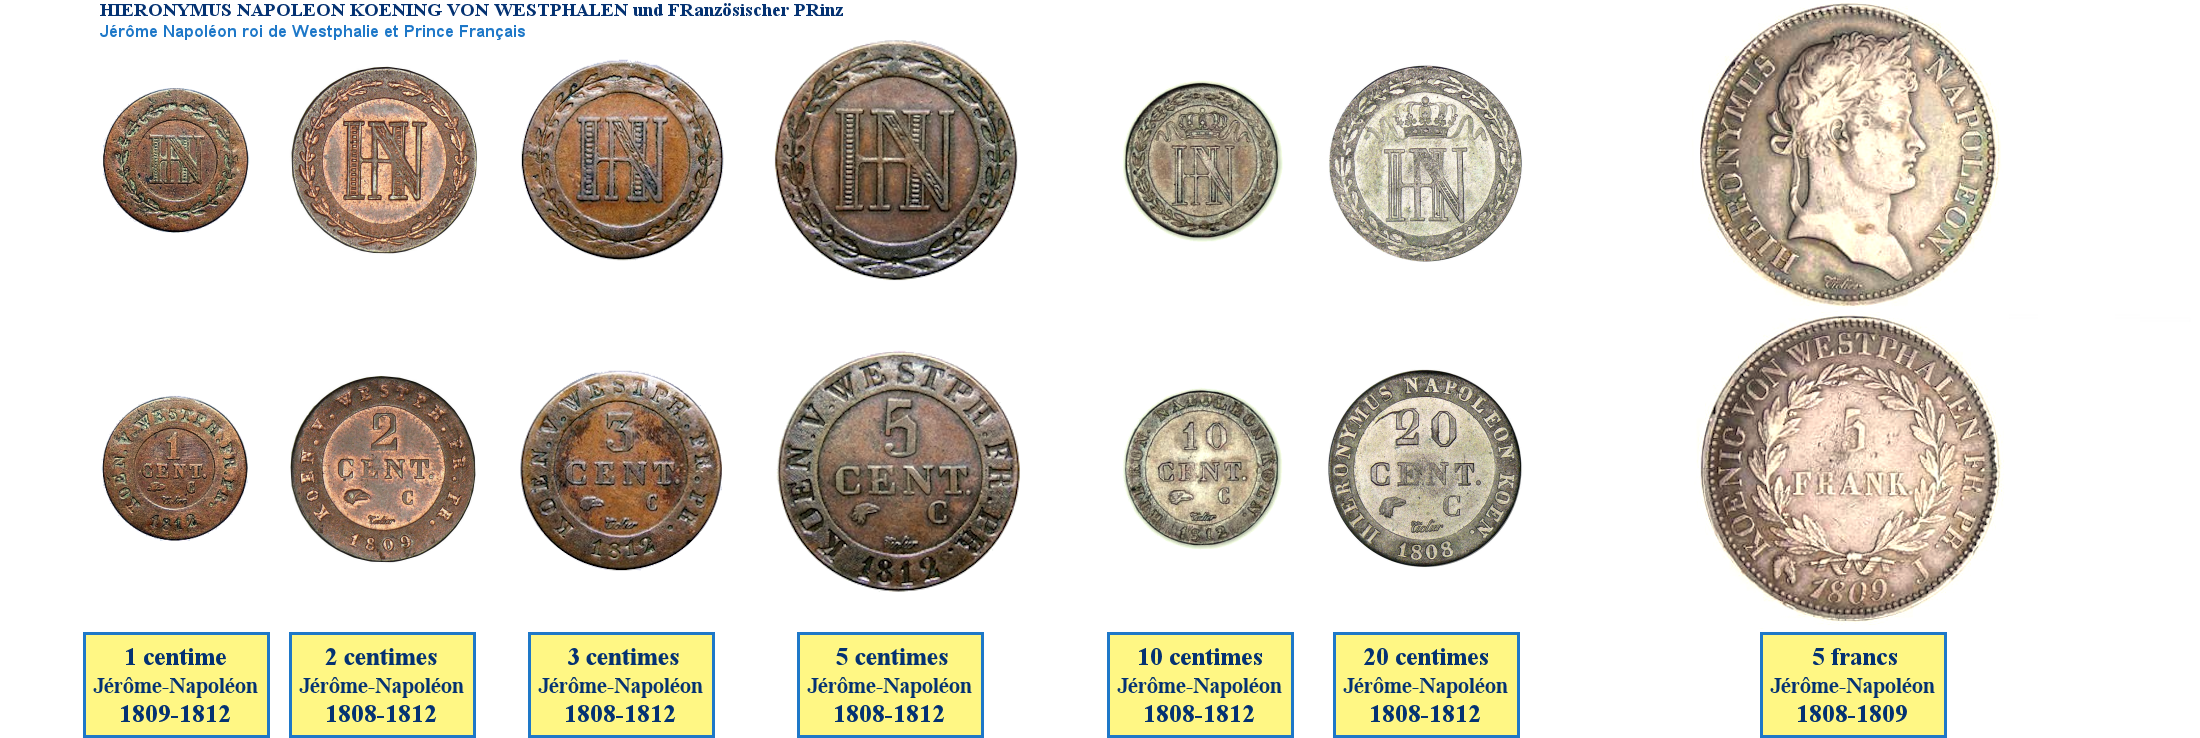 Photos de pièces de monnaies en franc du Royaume napoléonien de Westphalie